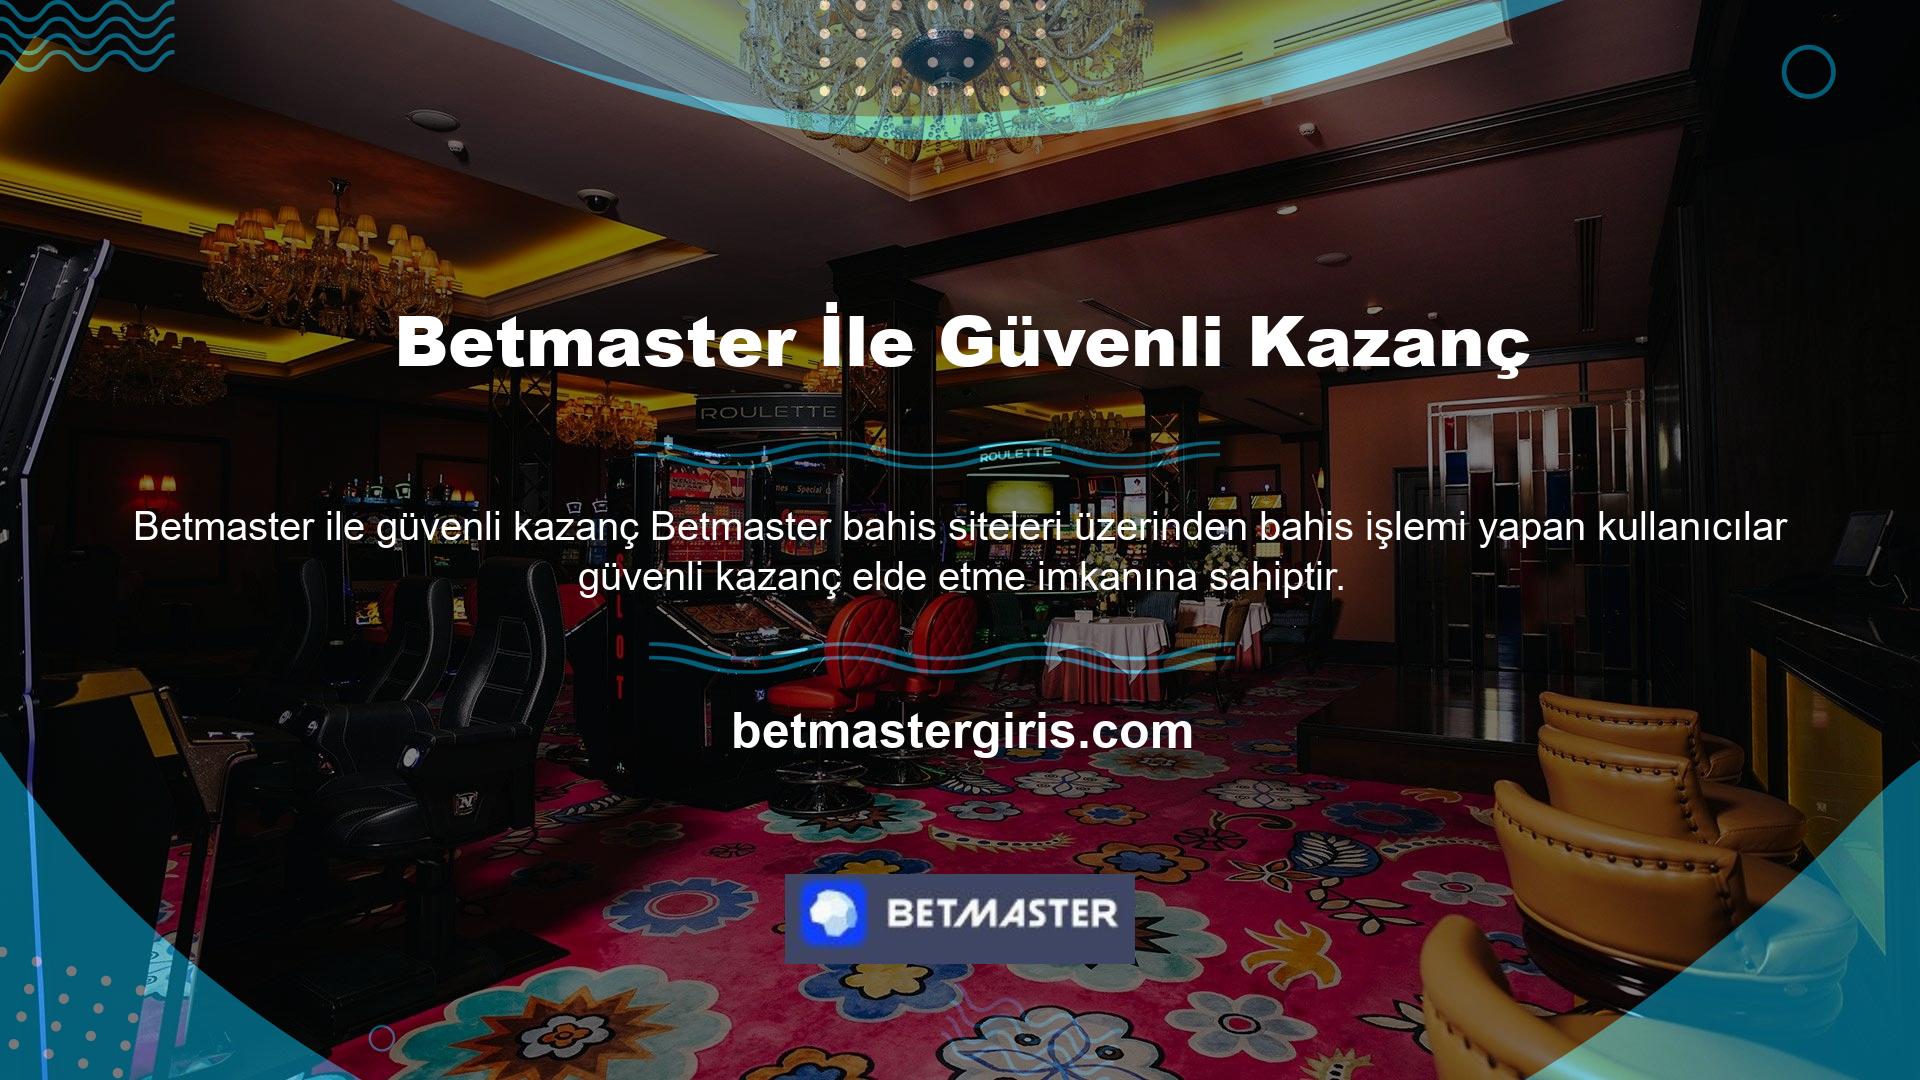 Betmaster canlı bahis seçeneği sayesinde maçı canlı izleyebilir, bu sayede büyük oranlarla büyük kazanabilirsiniz